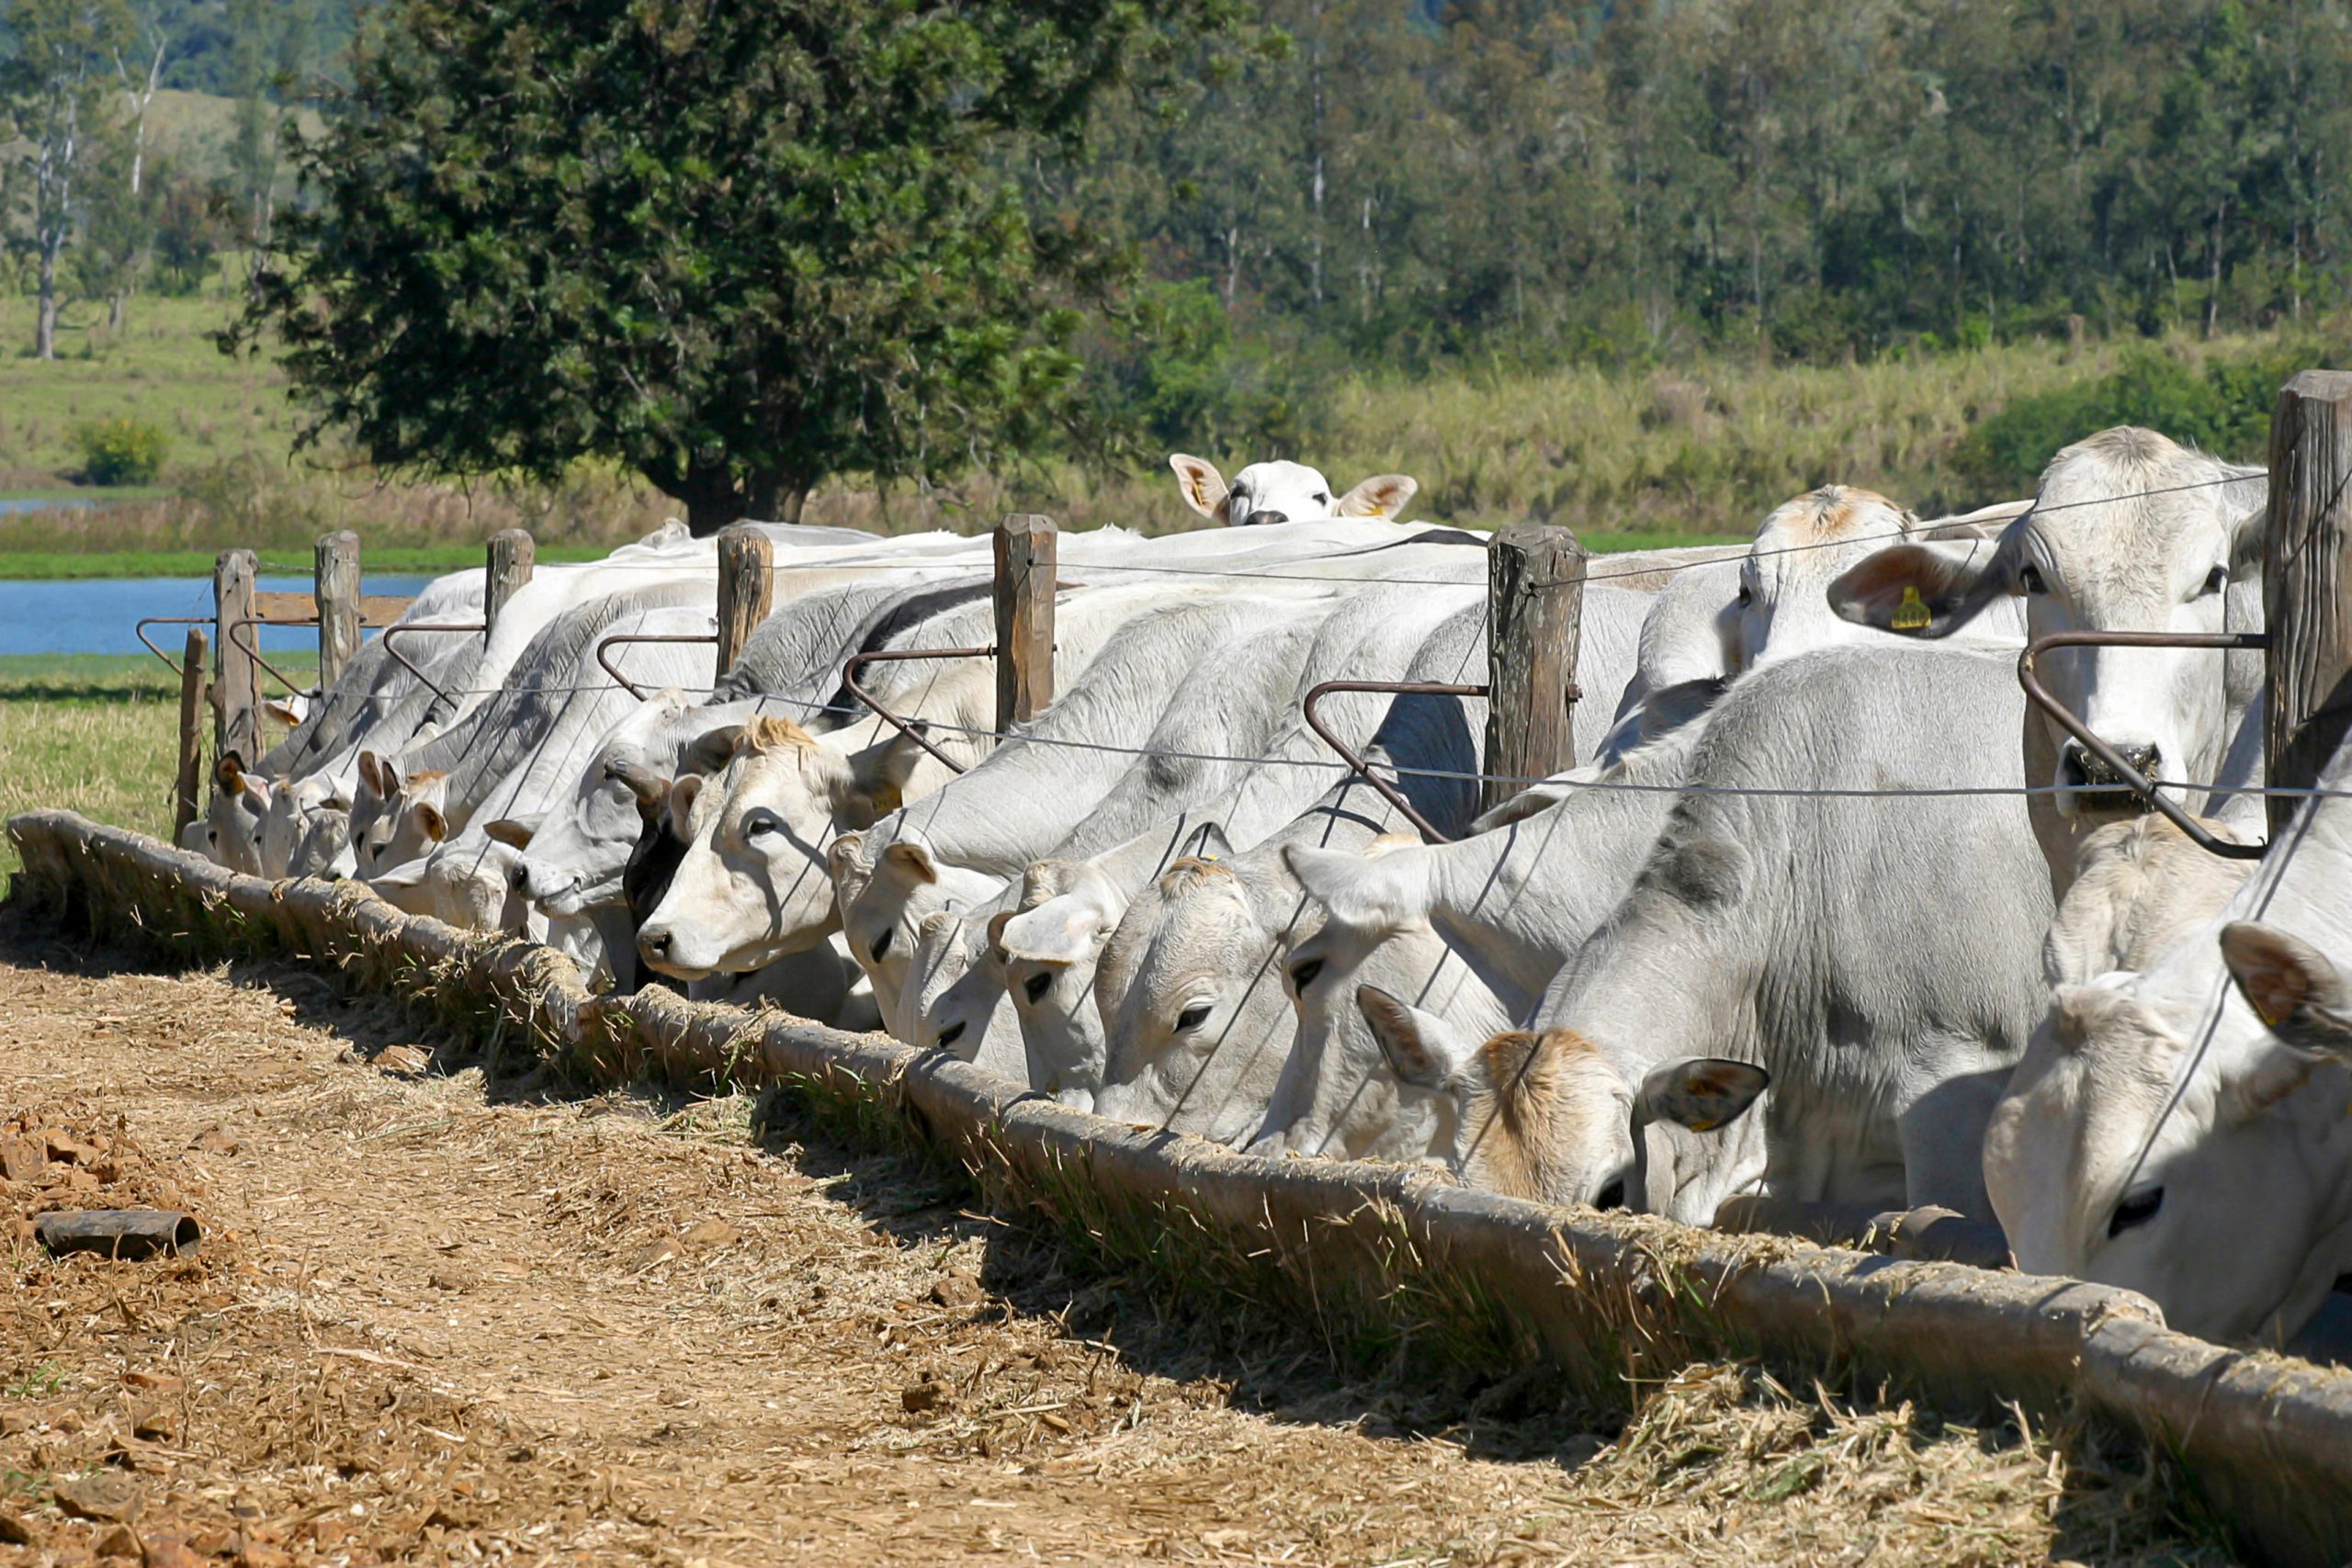 Acidose ruminal: um desafio na pecuária moderna